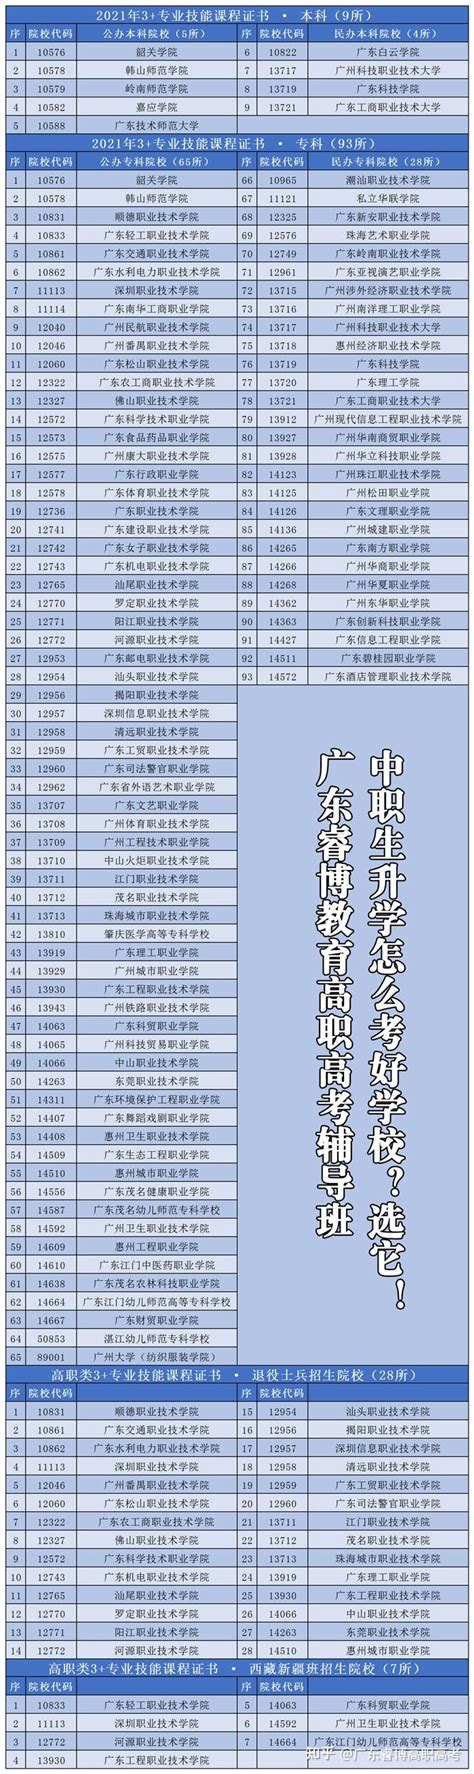 广东高职高考(3+证书)报考指南 - 广东高职高考网